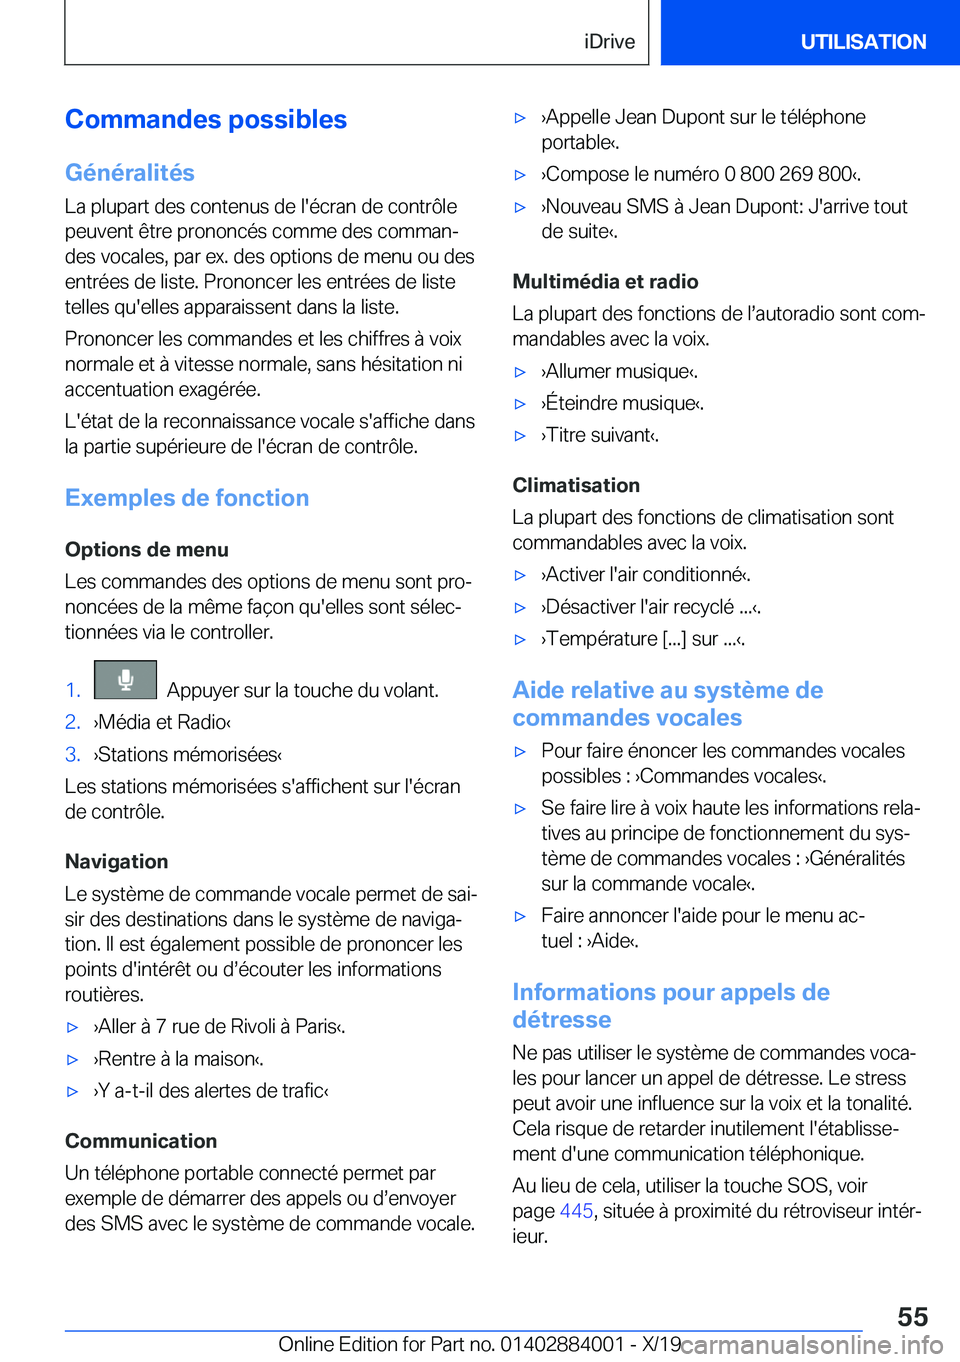 BMW X7 2020  Notices Demploi (in French) �C�o�m�m�a�n�d�e�s��p�o�s�s�i�b�l�e�s�G�é�n�é�r�a�l�i�t�é�s
�L�a��p�l�u�p�a�r�t��d�e�s��c�o�n�t�e�n�u�s��d�e��l�'�é�c�r�a�n��d�e��c�o�n�t�r�